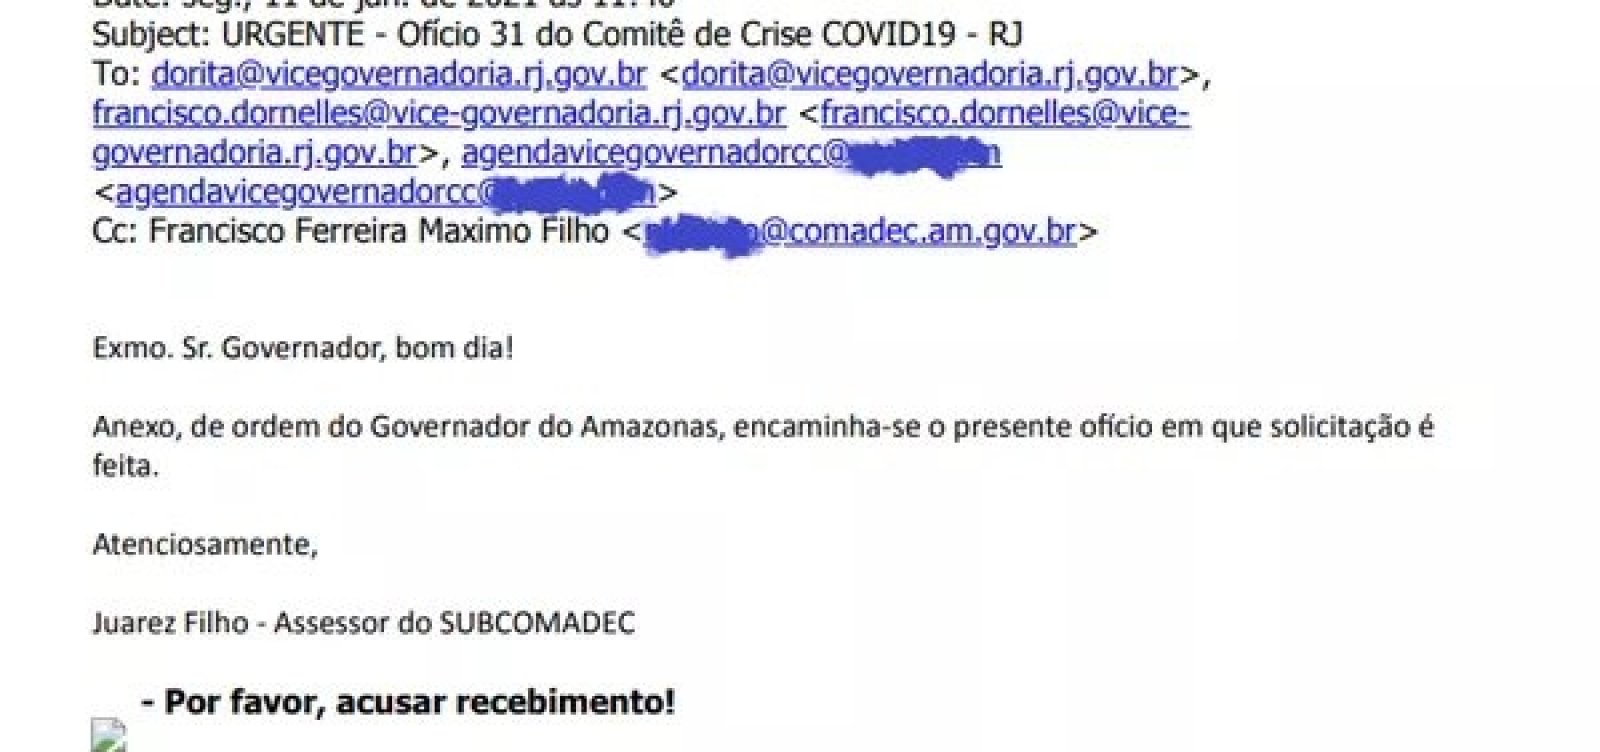 Pedido de oxigênio feito pelo governo do Amazonas ao estado do RJ foi enviado para e-mail errado